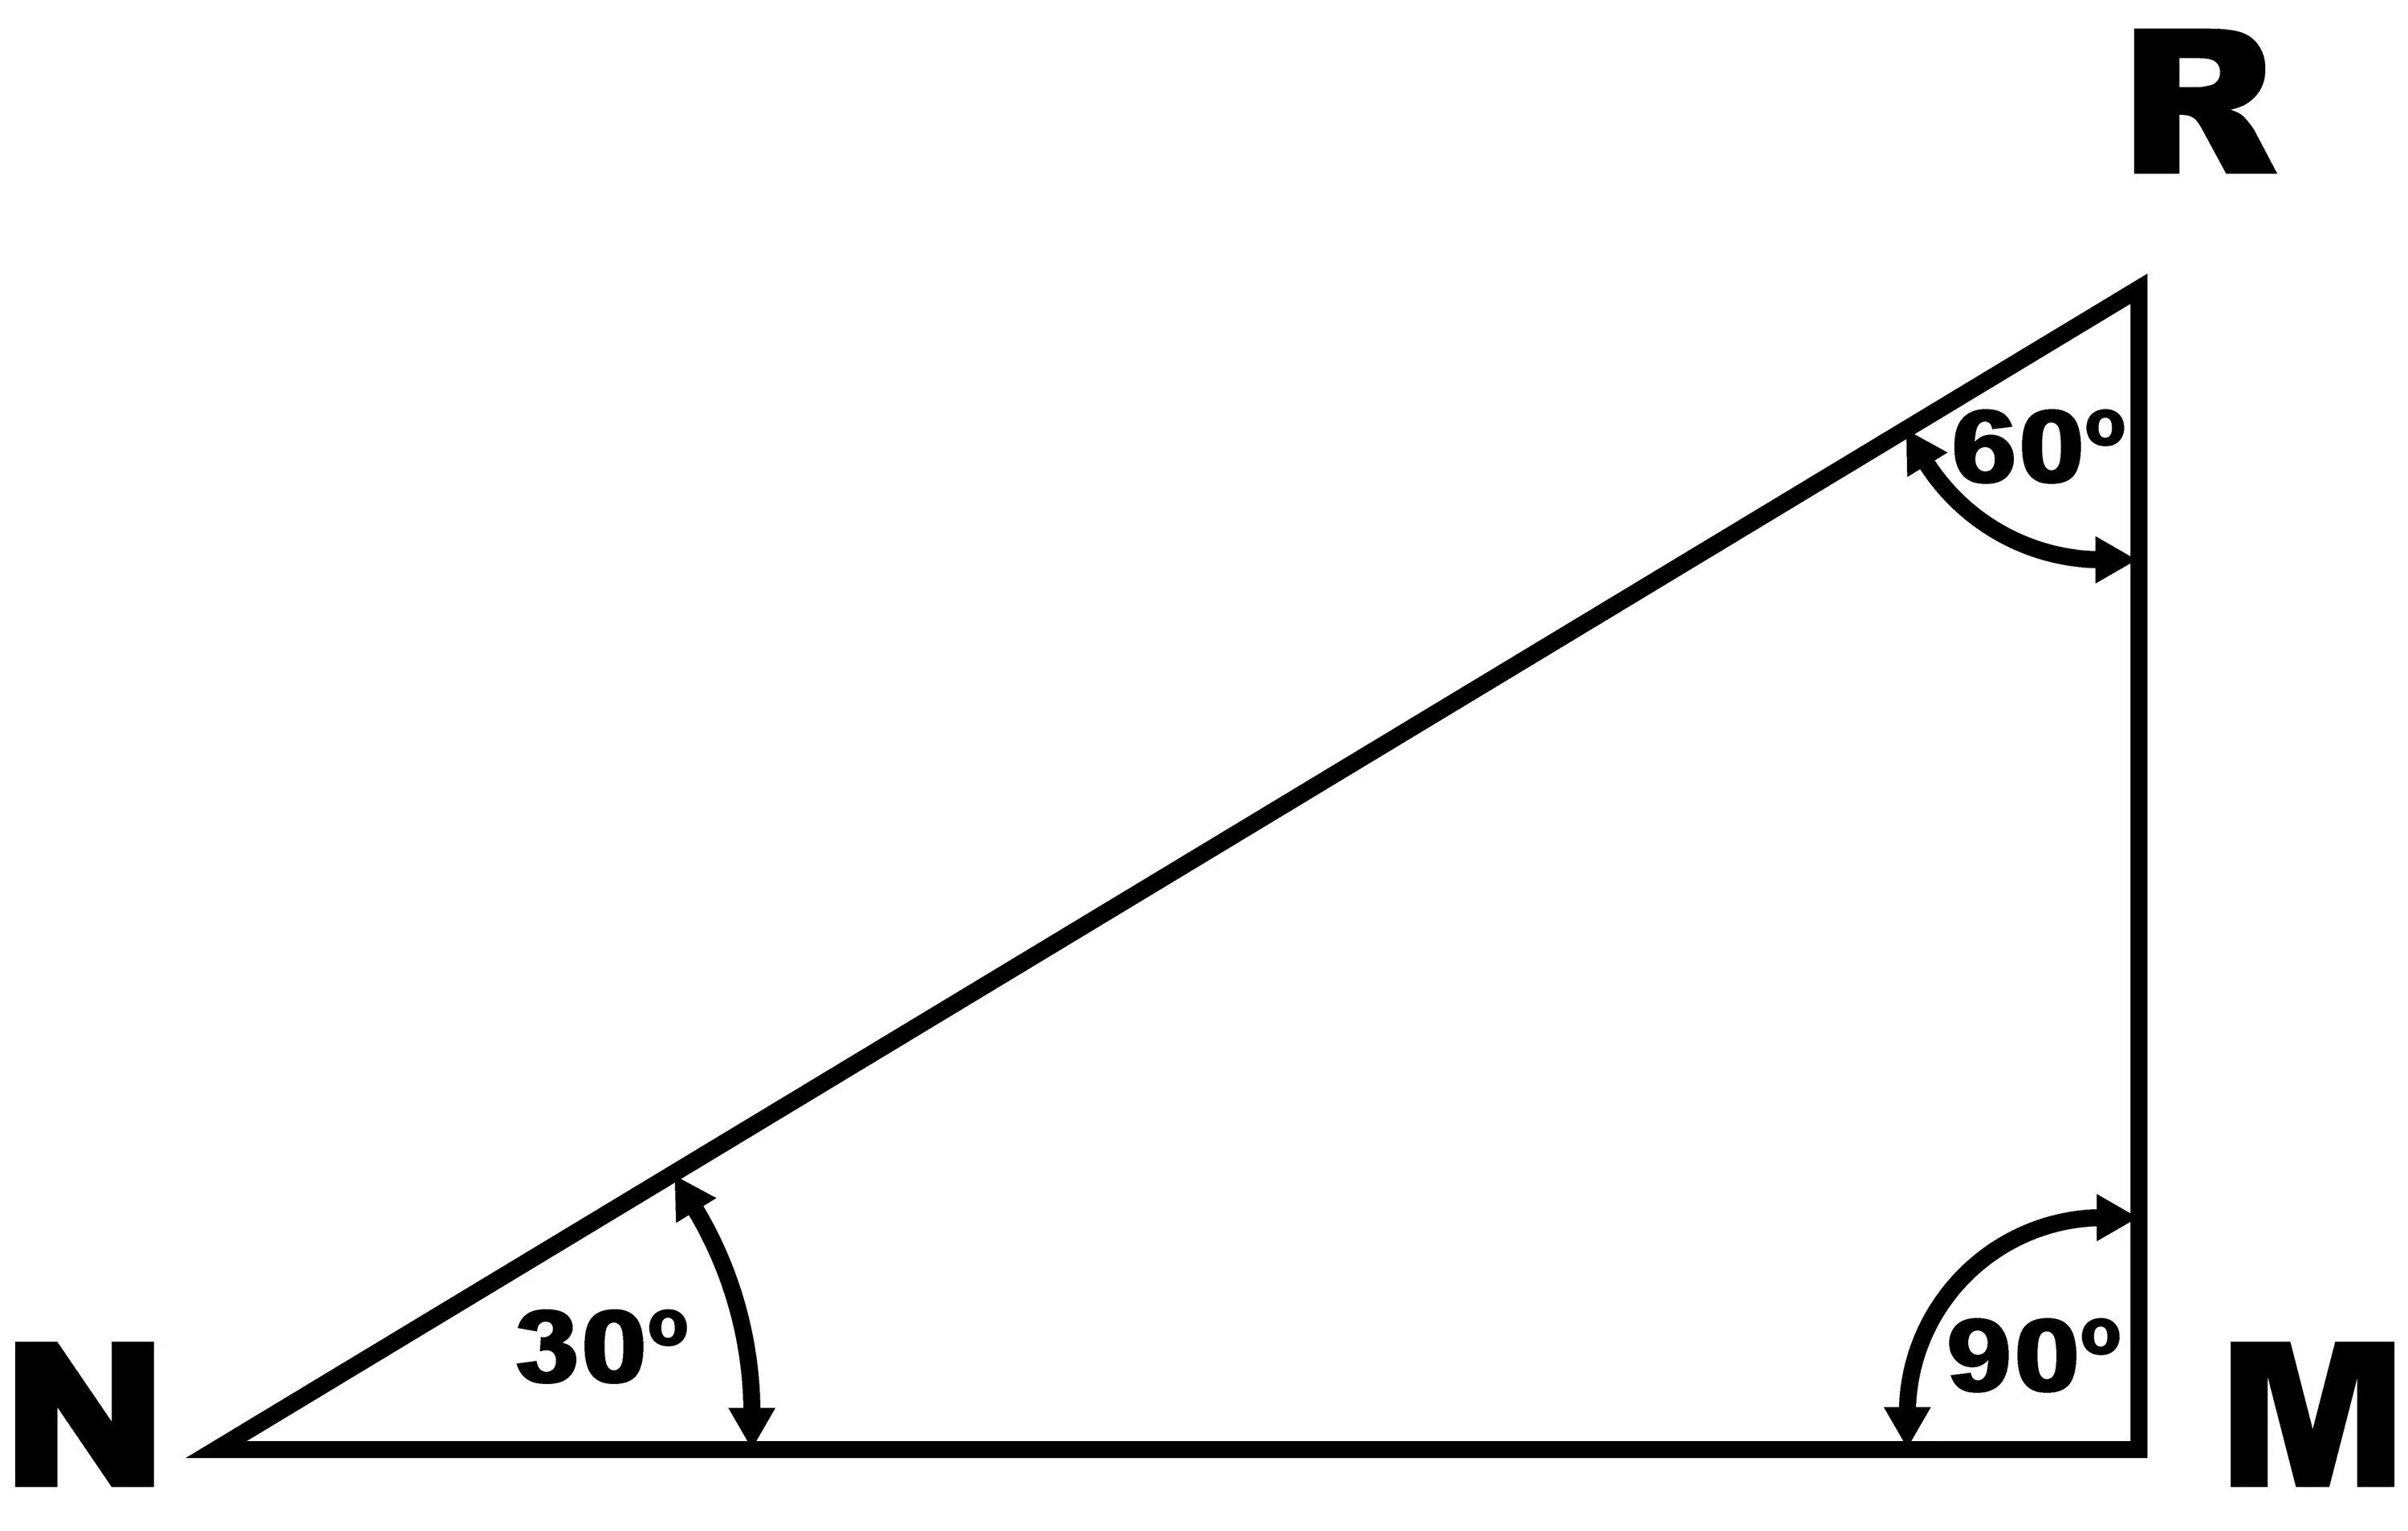 Углы прямоугольного треугольника 90 60 30. 30 60 90 Градусов углы треугольника. Угол 30 градусов в прямоугольном треугольнике. Треугольник 90 60 30 градусов. Свойство 60 градусов